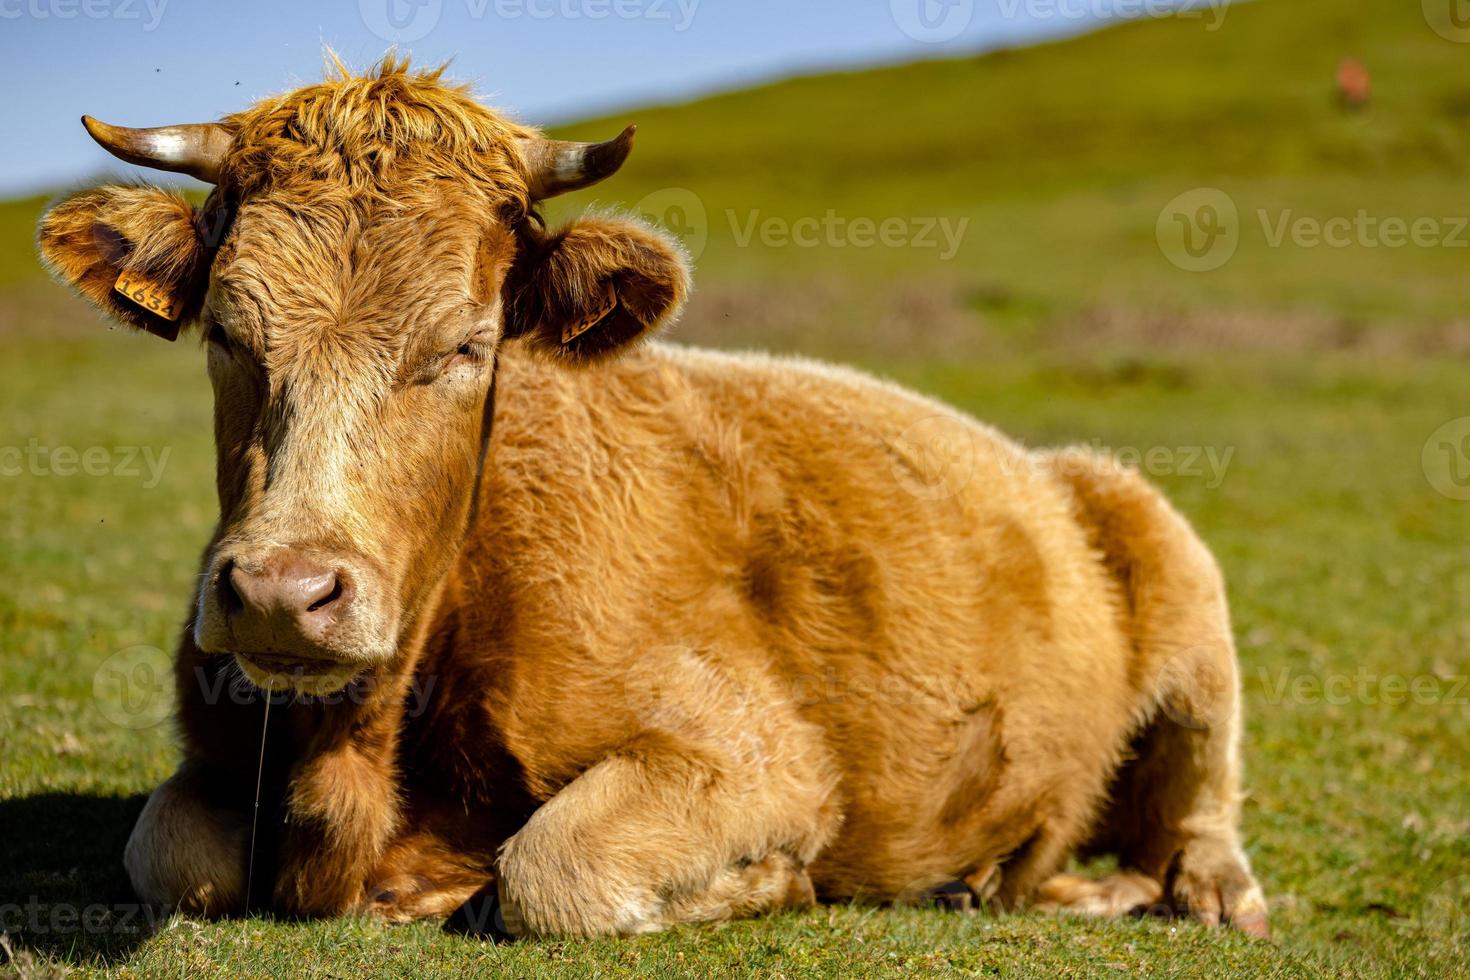 encantador vaca acostado en el pasto foto